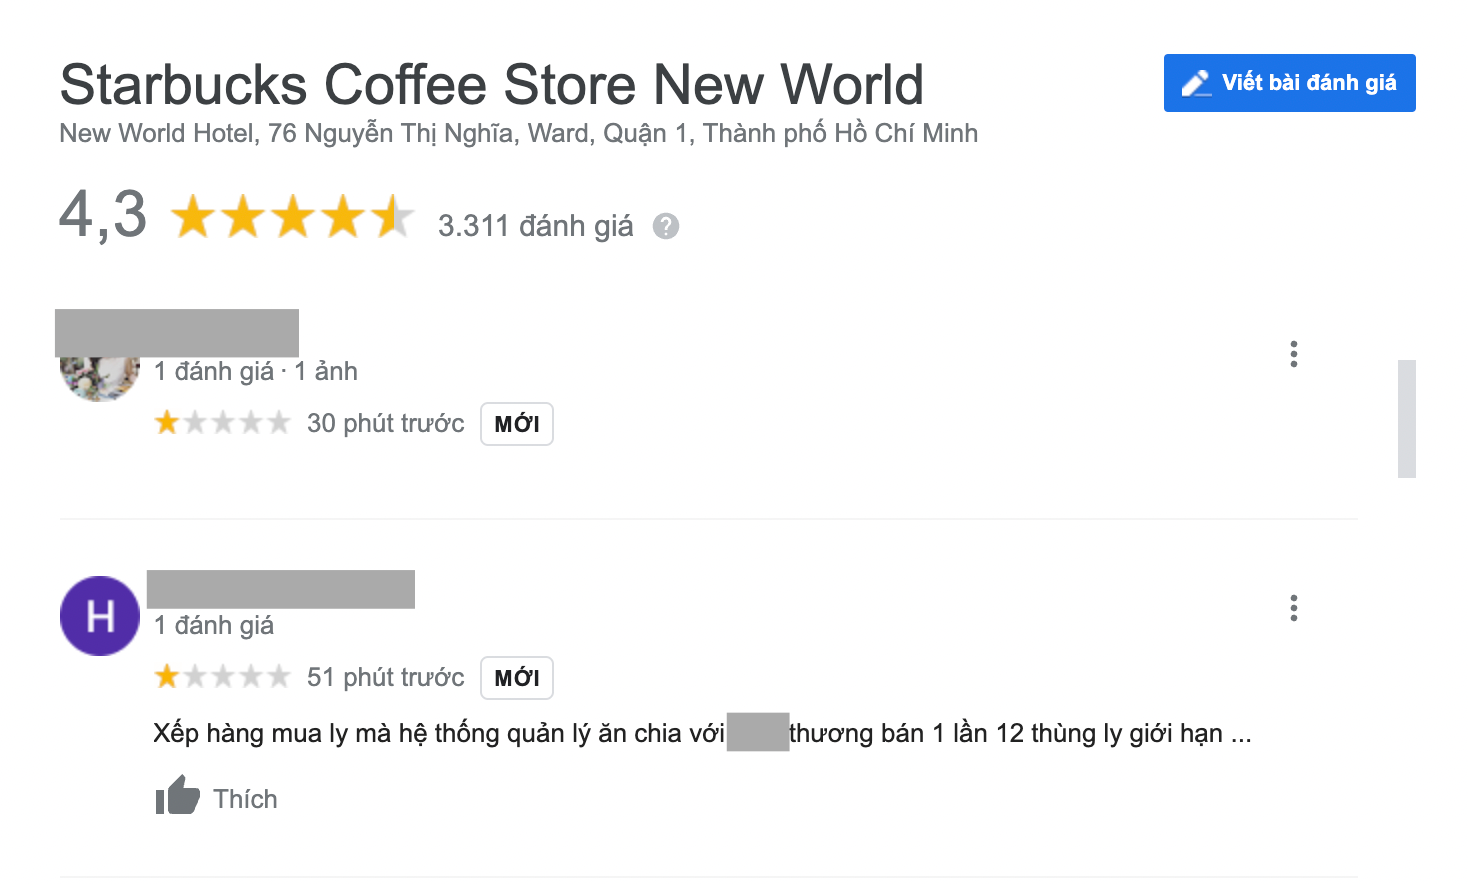 Starbucks New World bán cho 1 khách 30 ly bản giới hạn: nhận loạt đánh giá 1 sao, khách ruột quay lưng vì mập mờ